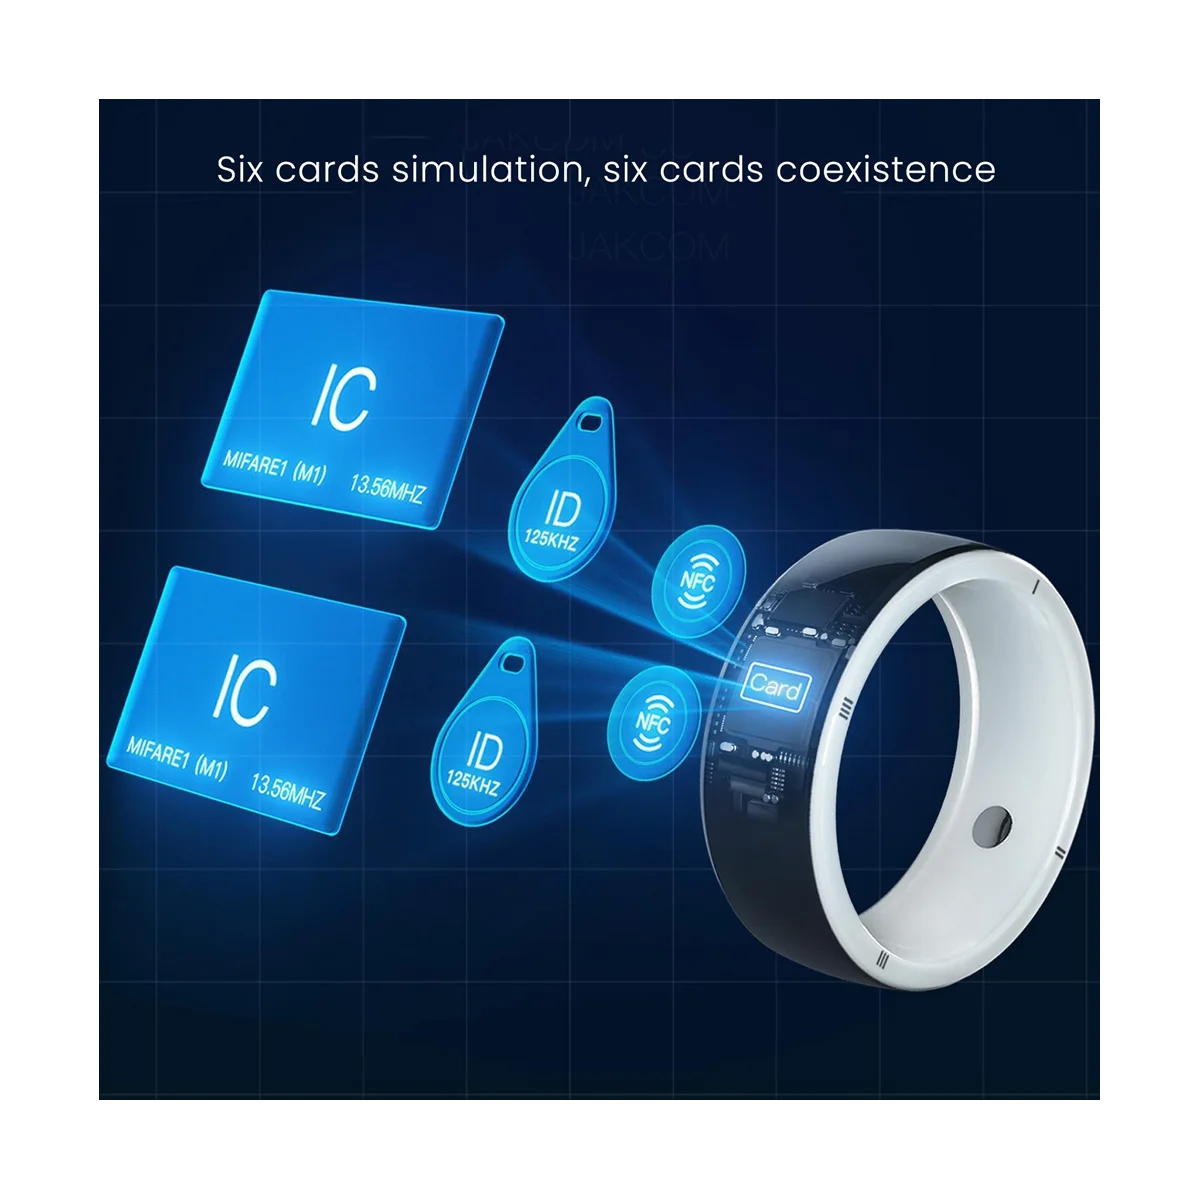 

JAKCOM R5 новый продукт бытовой электроники умные носимые устройства часы со встроенными RFID-картами и оздоровительным M